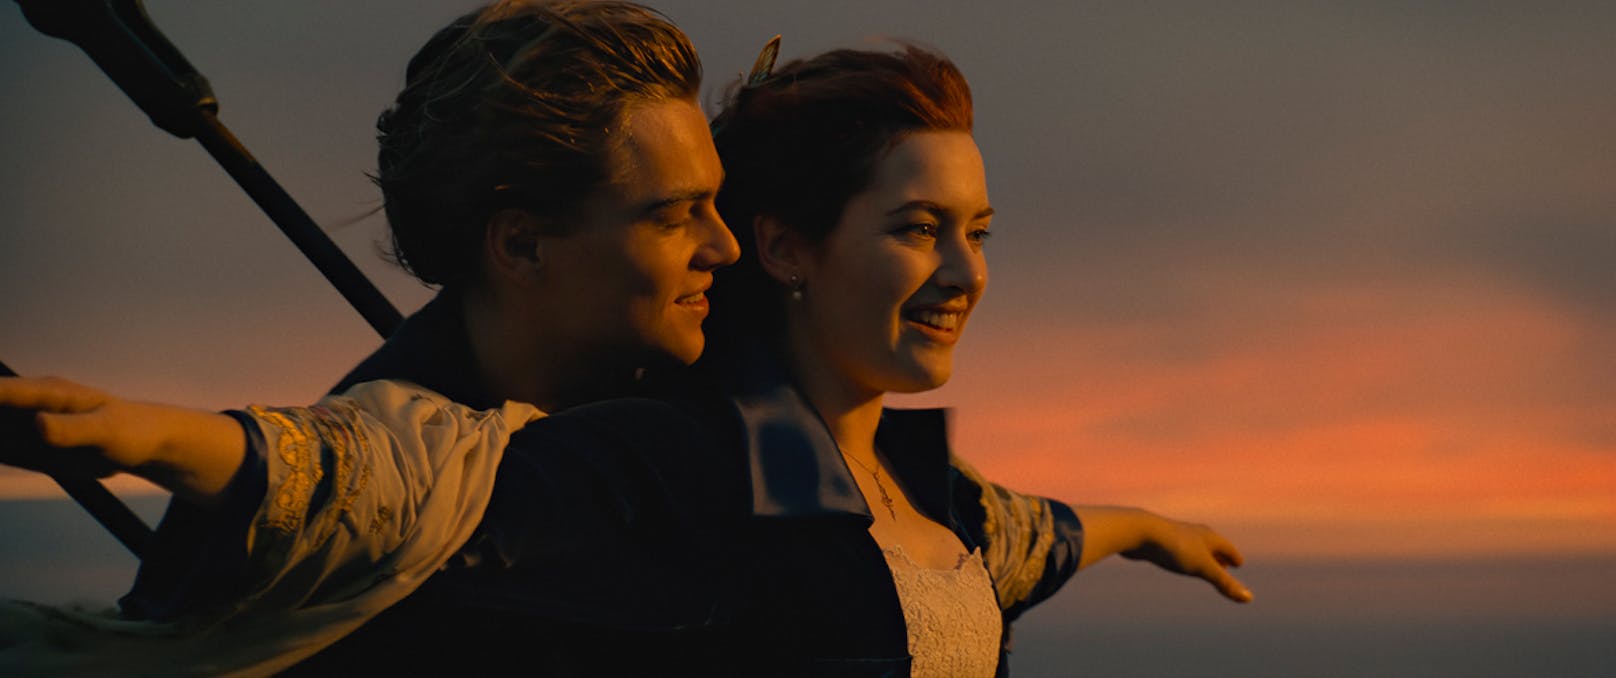 Kultfilm Titanic kommt zurück in die Kinos